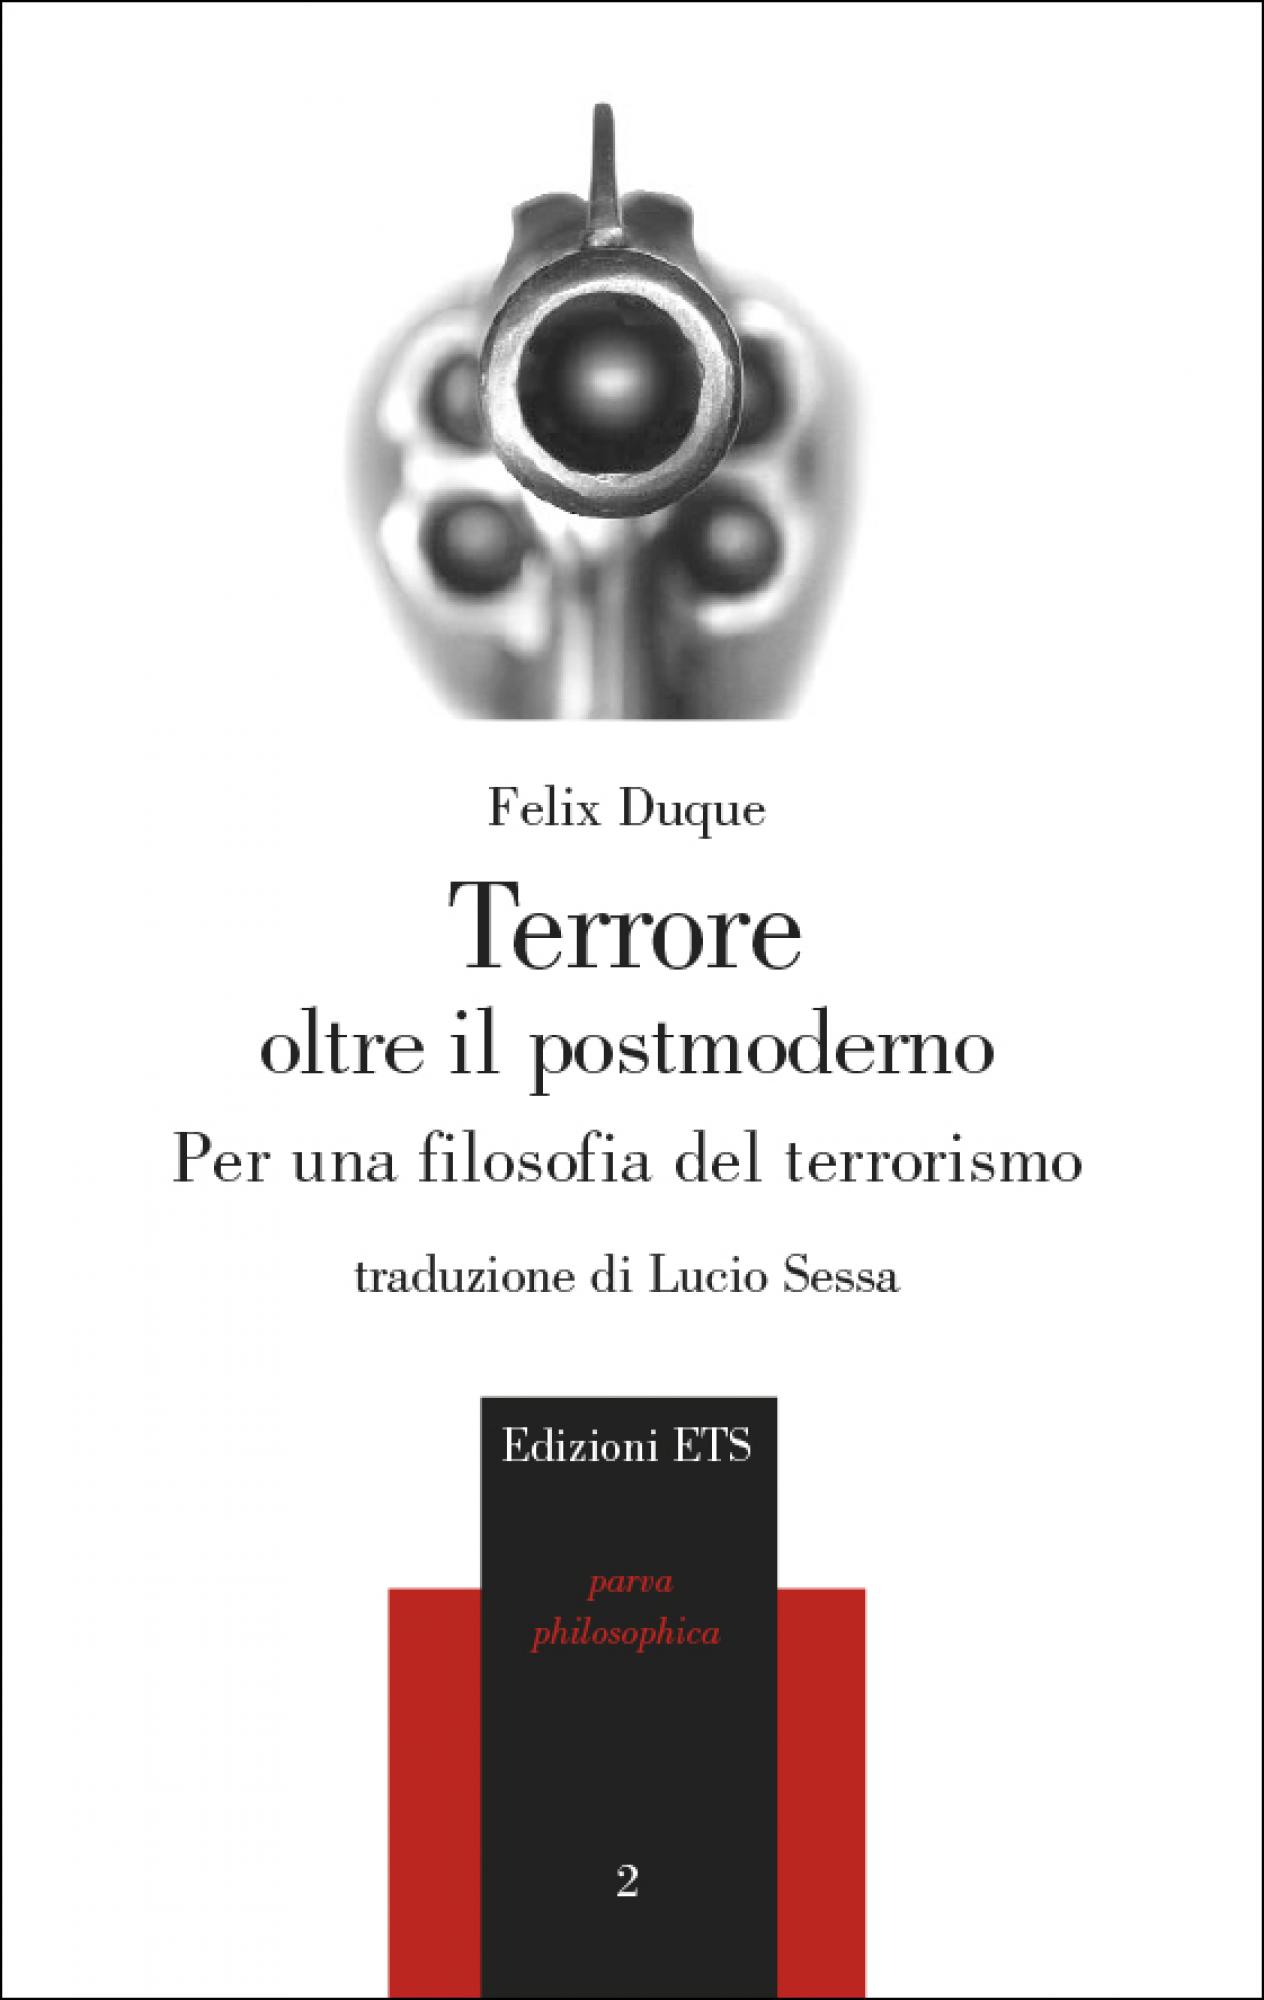 Terrore oltre il postmoderno.Per una filosofia del terrorismo